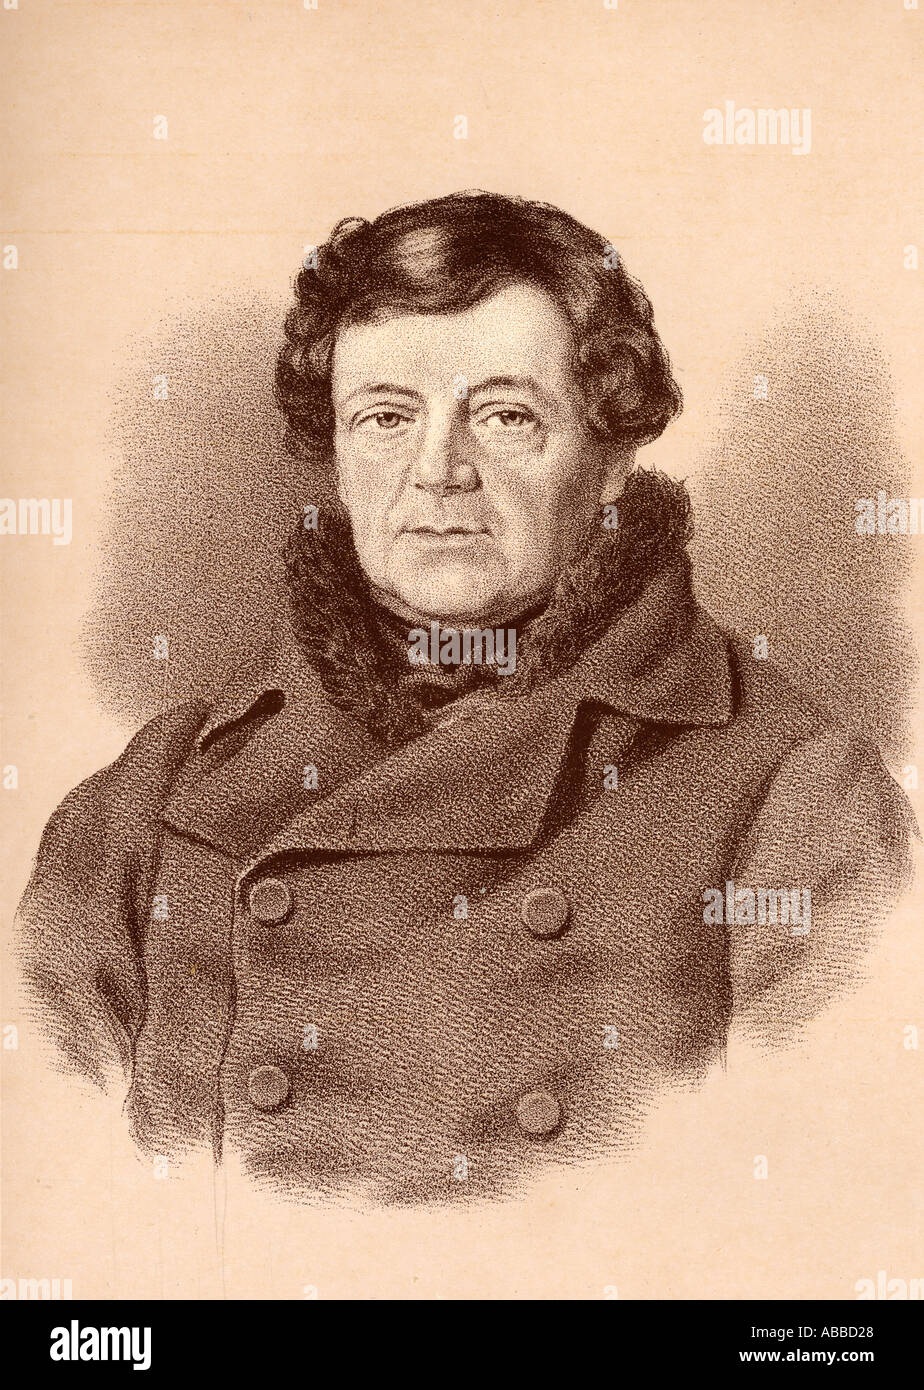 Daniel O'Connell, 1775 - 1847, auch bekannt als der Befreier oder die Befreier. Irische politischer Führer. Stockfoto